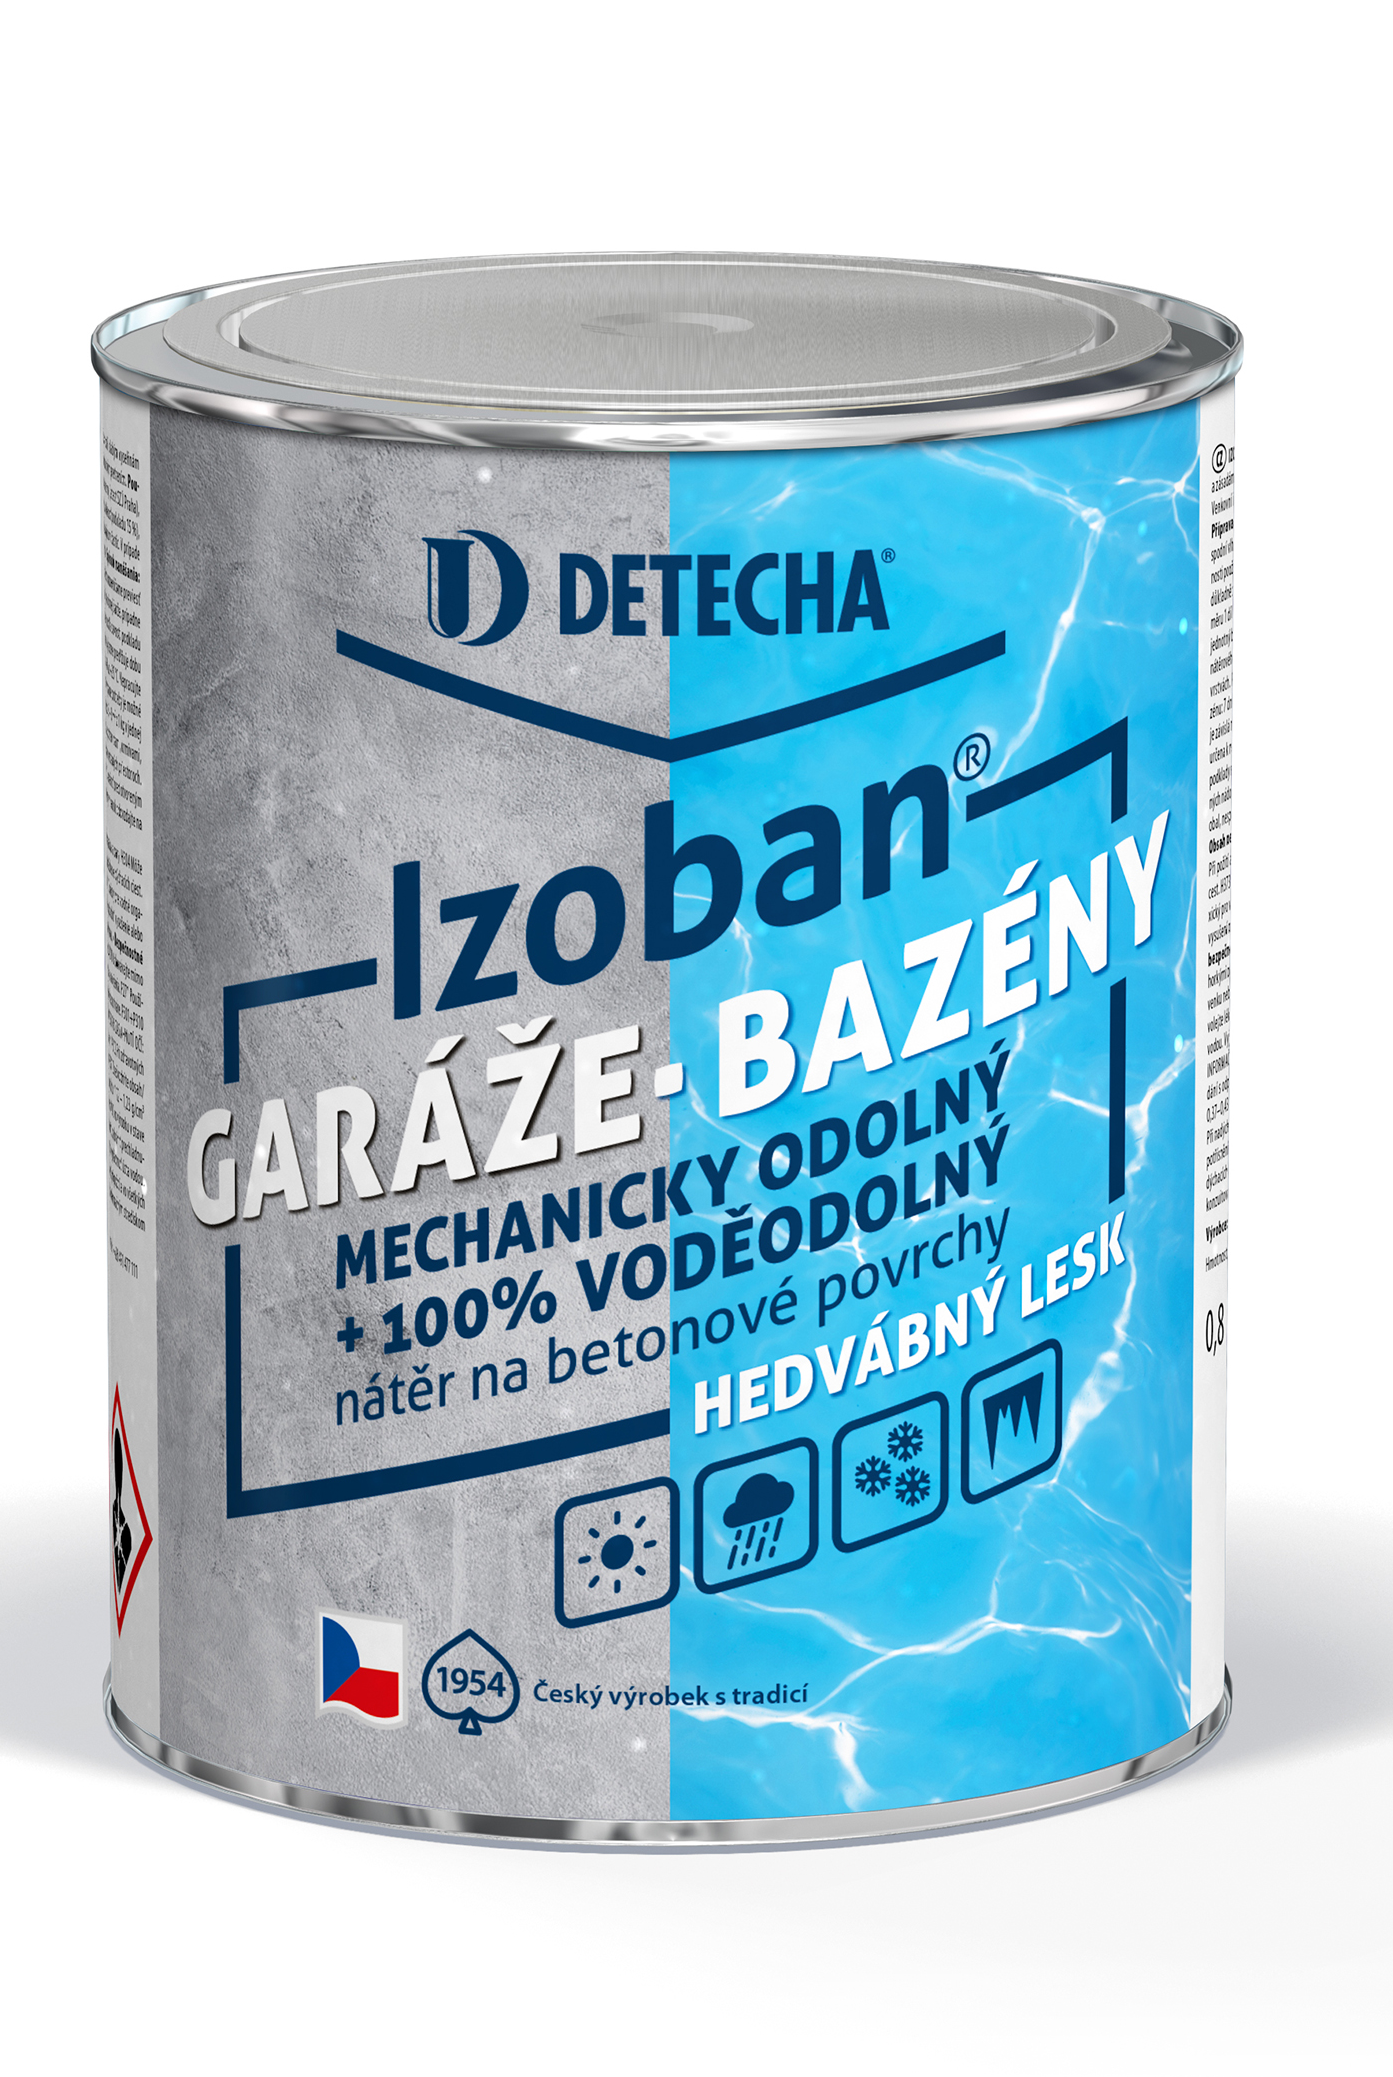 Detecha Izoban * Syntetická, hedvábně lesklá barva na beton, podlahy a bazény. 25